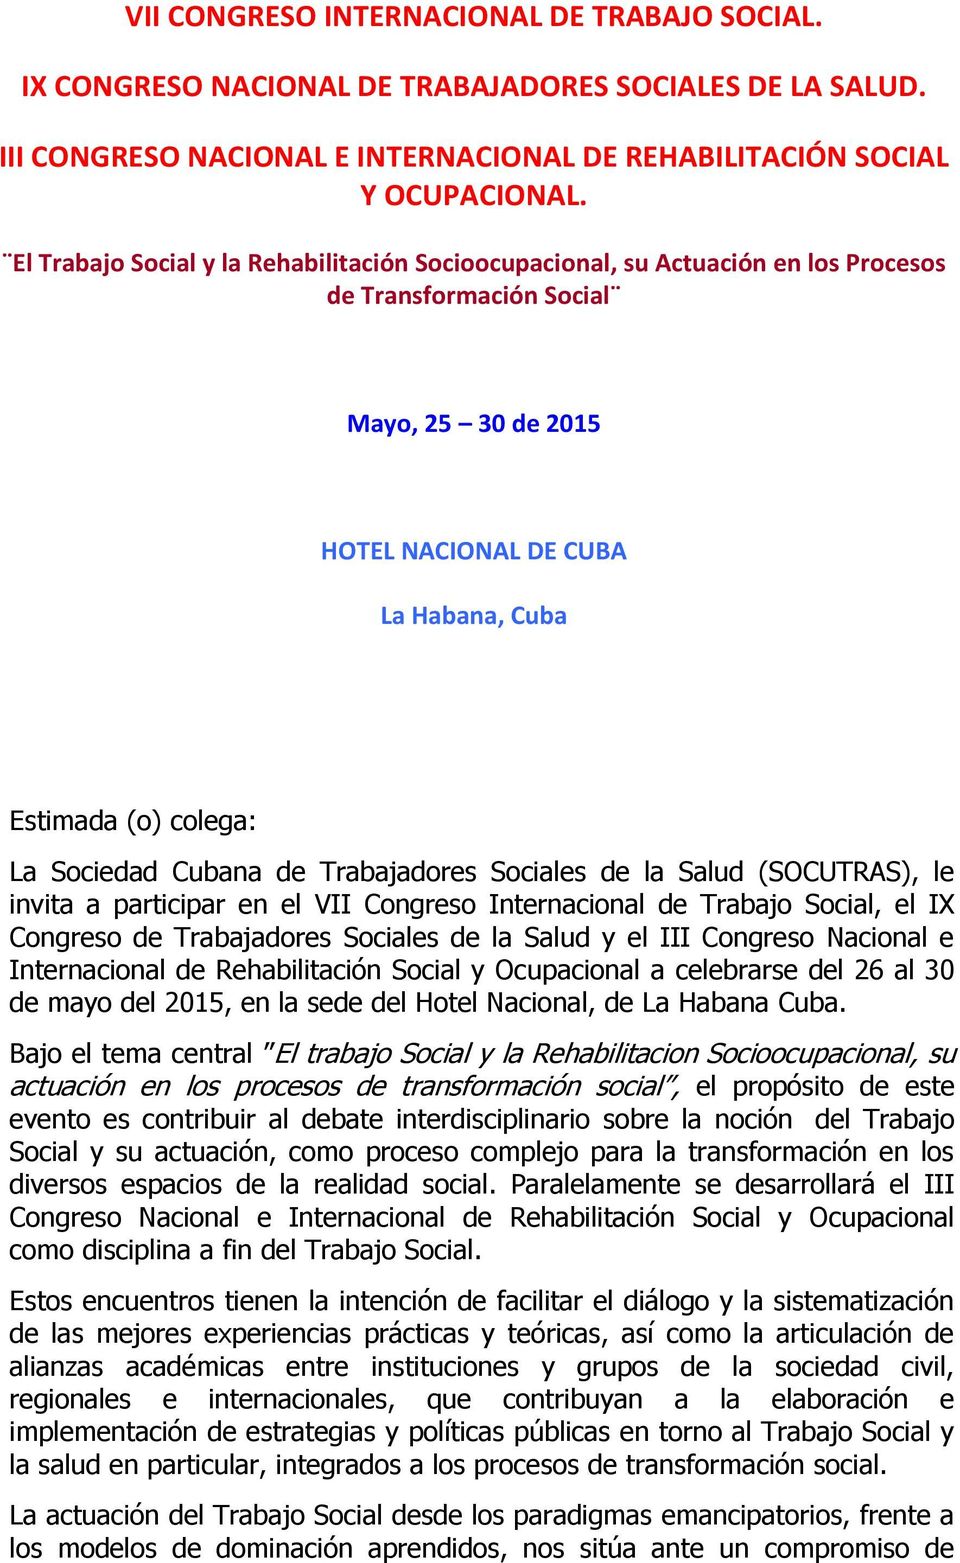 Sociedad Cubana de Trabajadores Sociales de la Salud (SOCUTRAS), le invita a participar en el VII Congreso Internacional de Trabajo Social, el IX Congreso de Trabajadores Sociales de la Salud y el